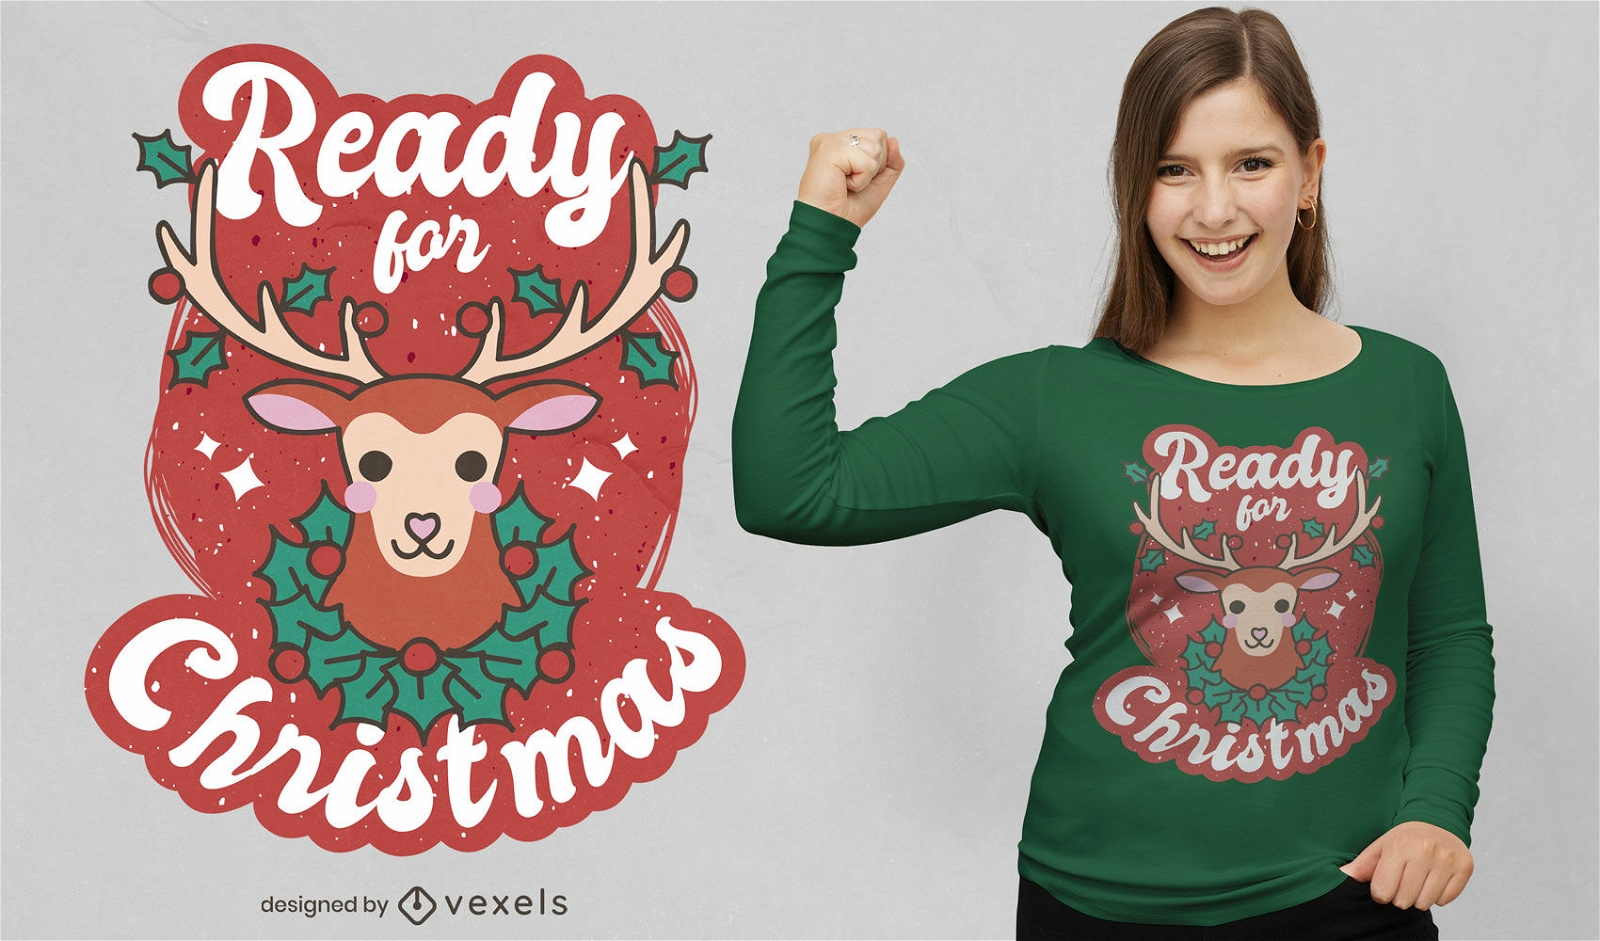 Bereit f?r das weihnachtliche Hirsch-T-Shirt-Design